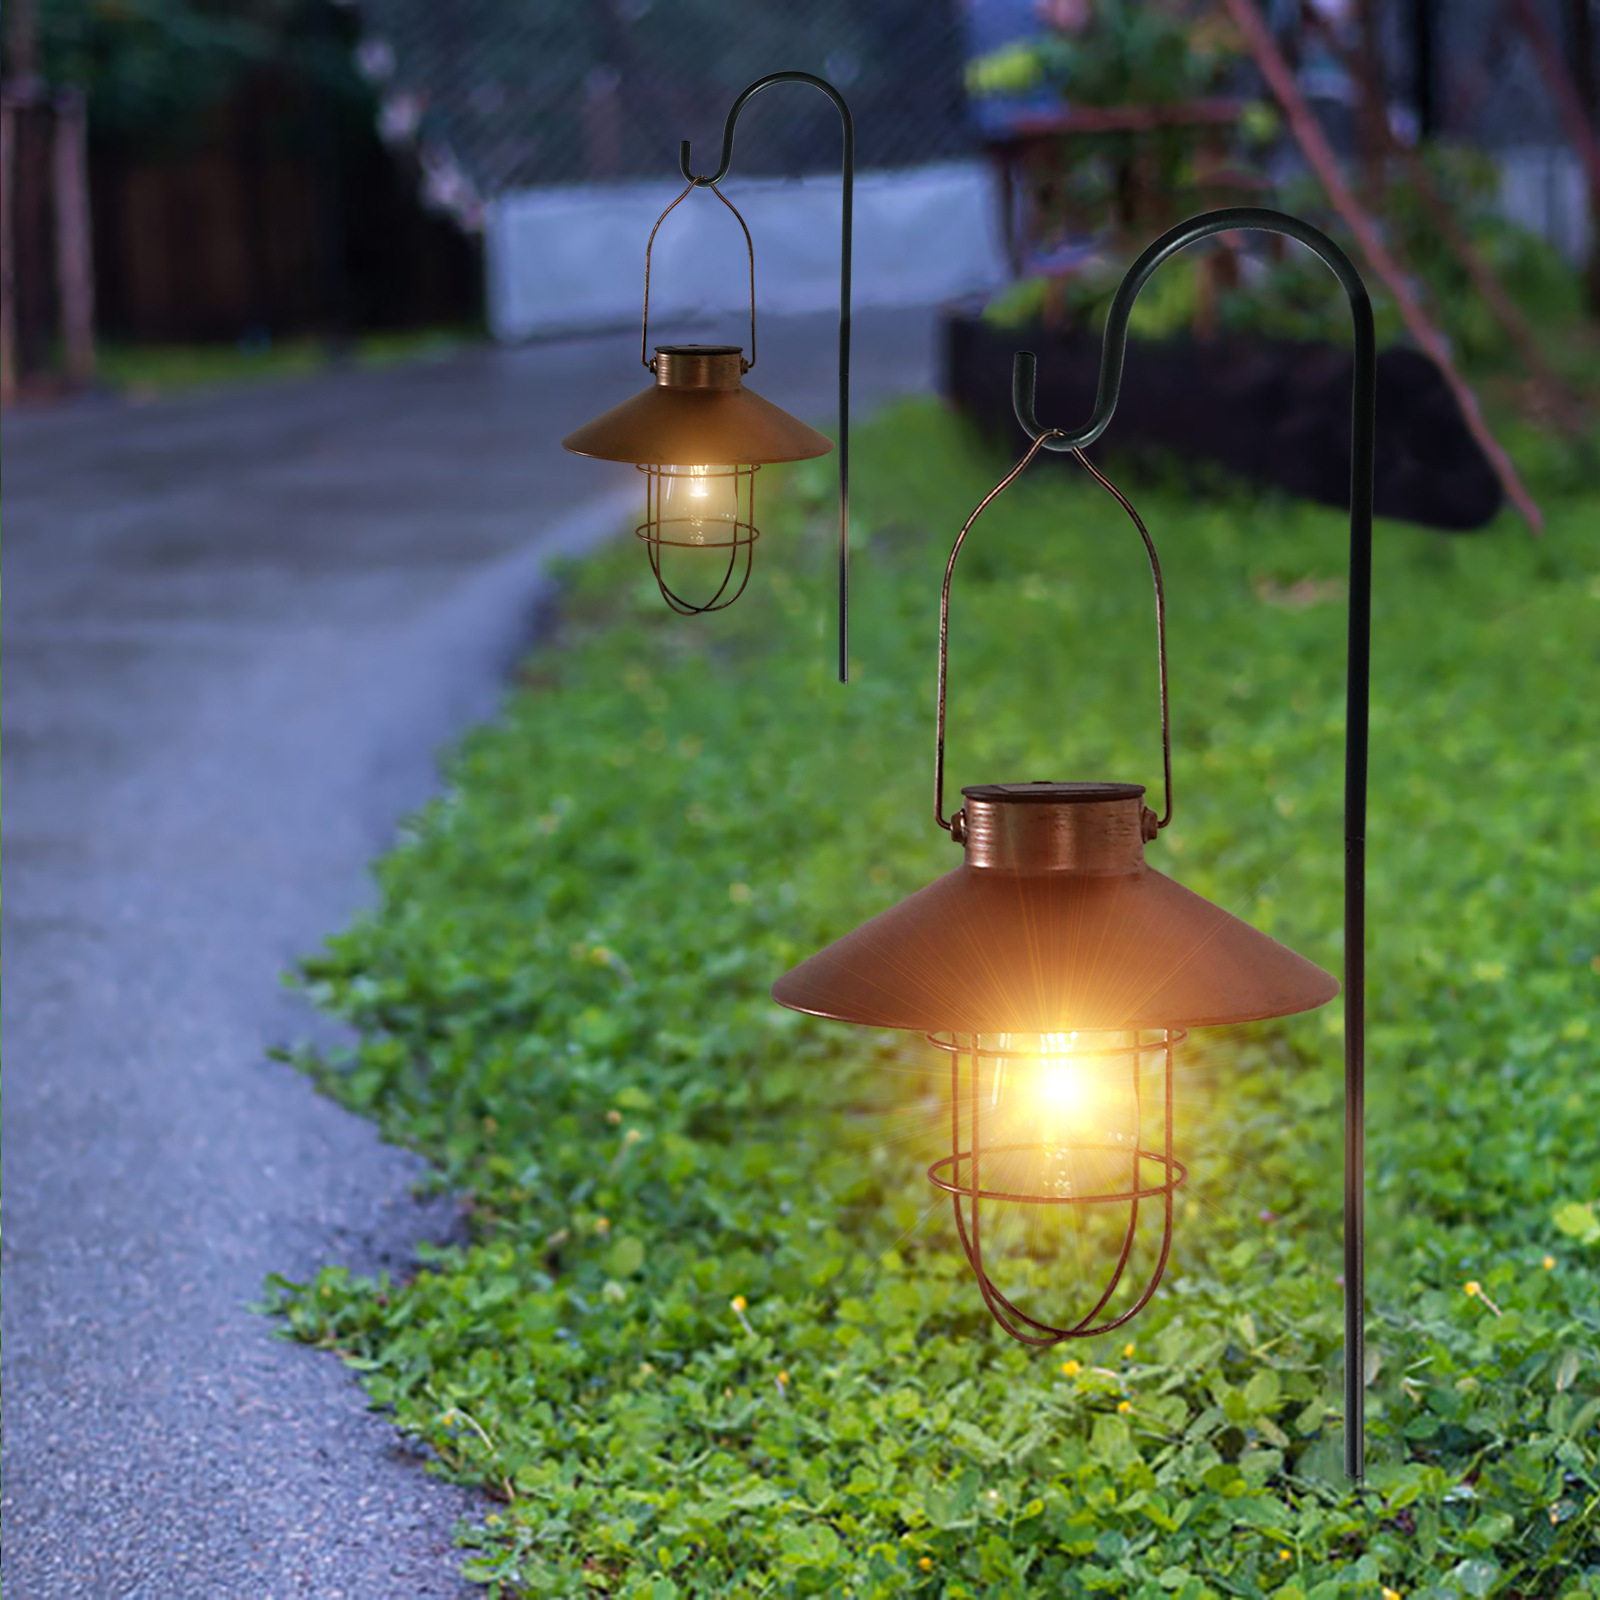 Retro Solar Lantaarn voor Tuindecoratie Outdoor Waterdicht Licht Vintage Solar Lamp met Wolfraam Lamp Ornament voor Patio Yard